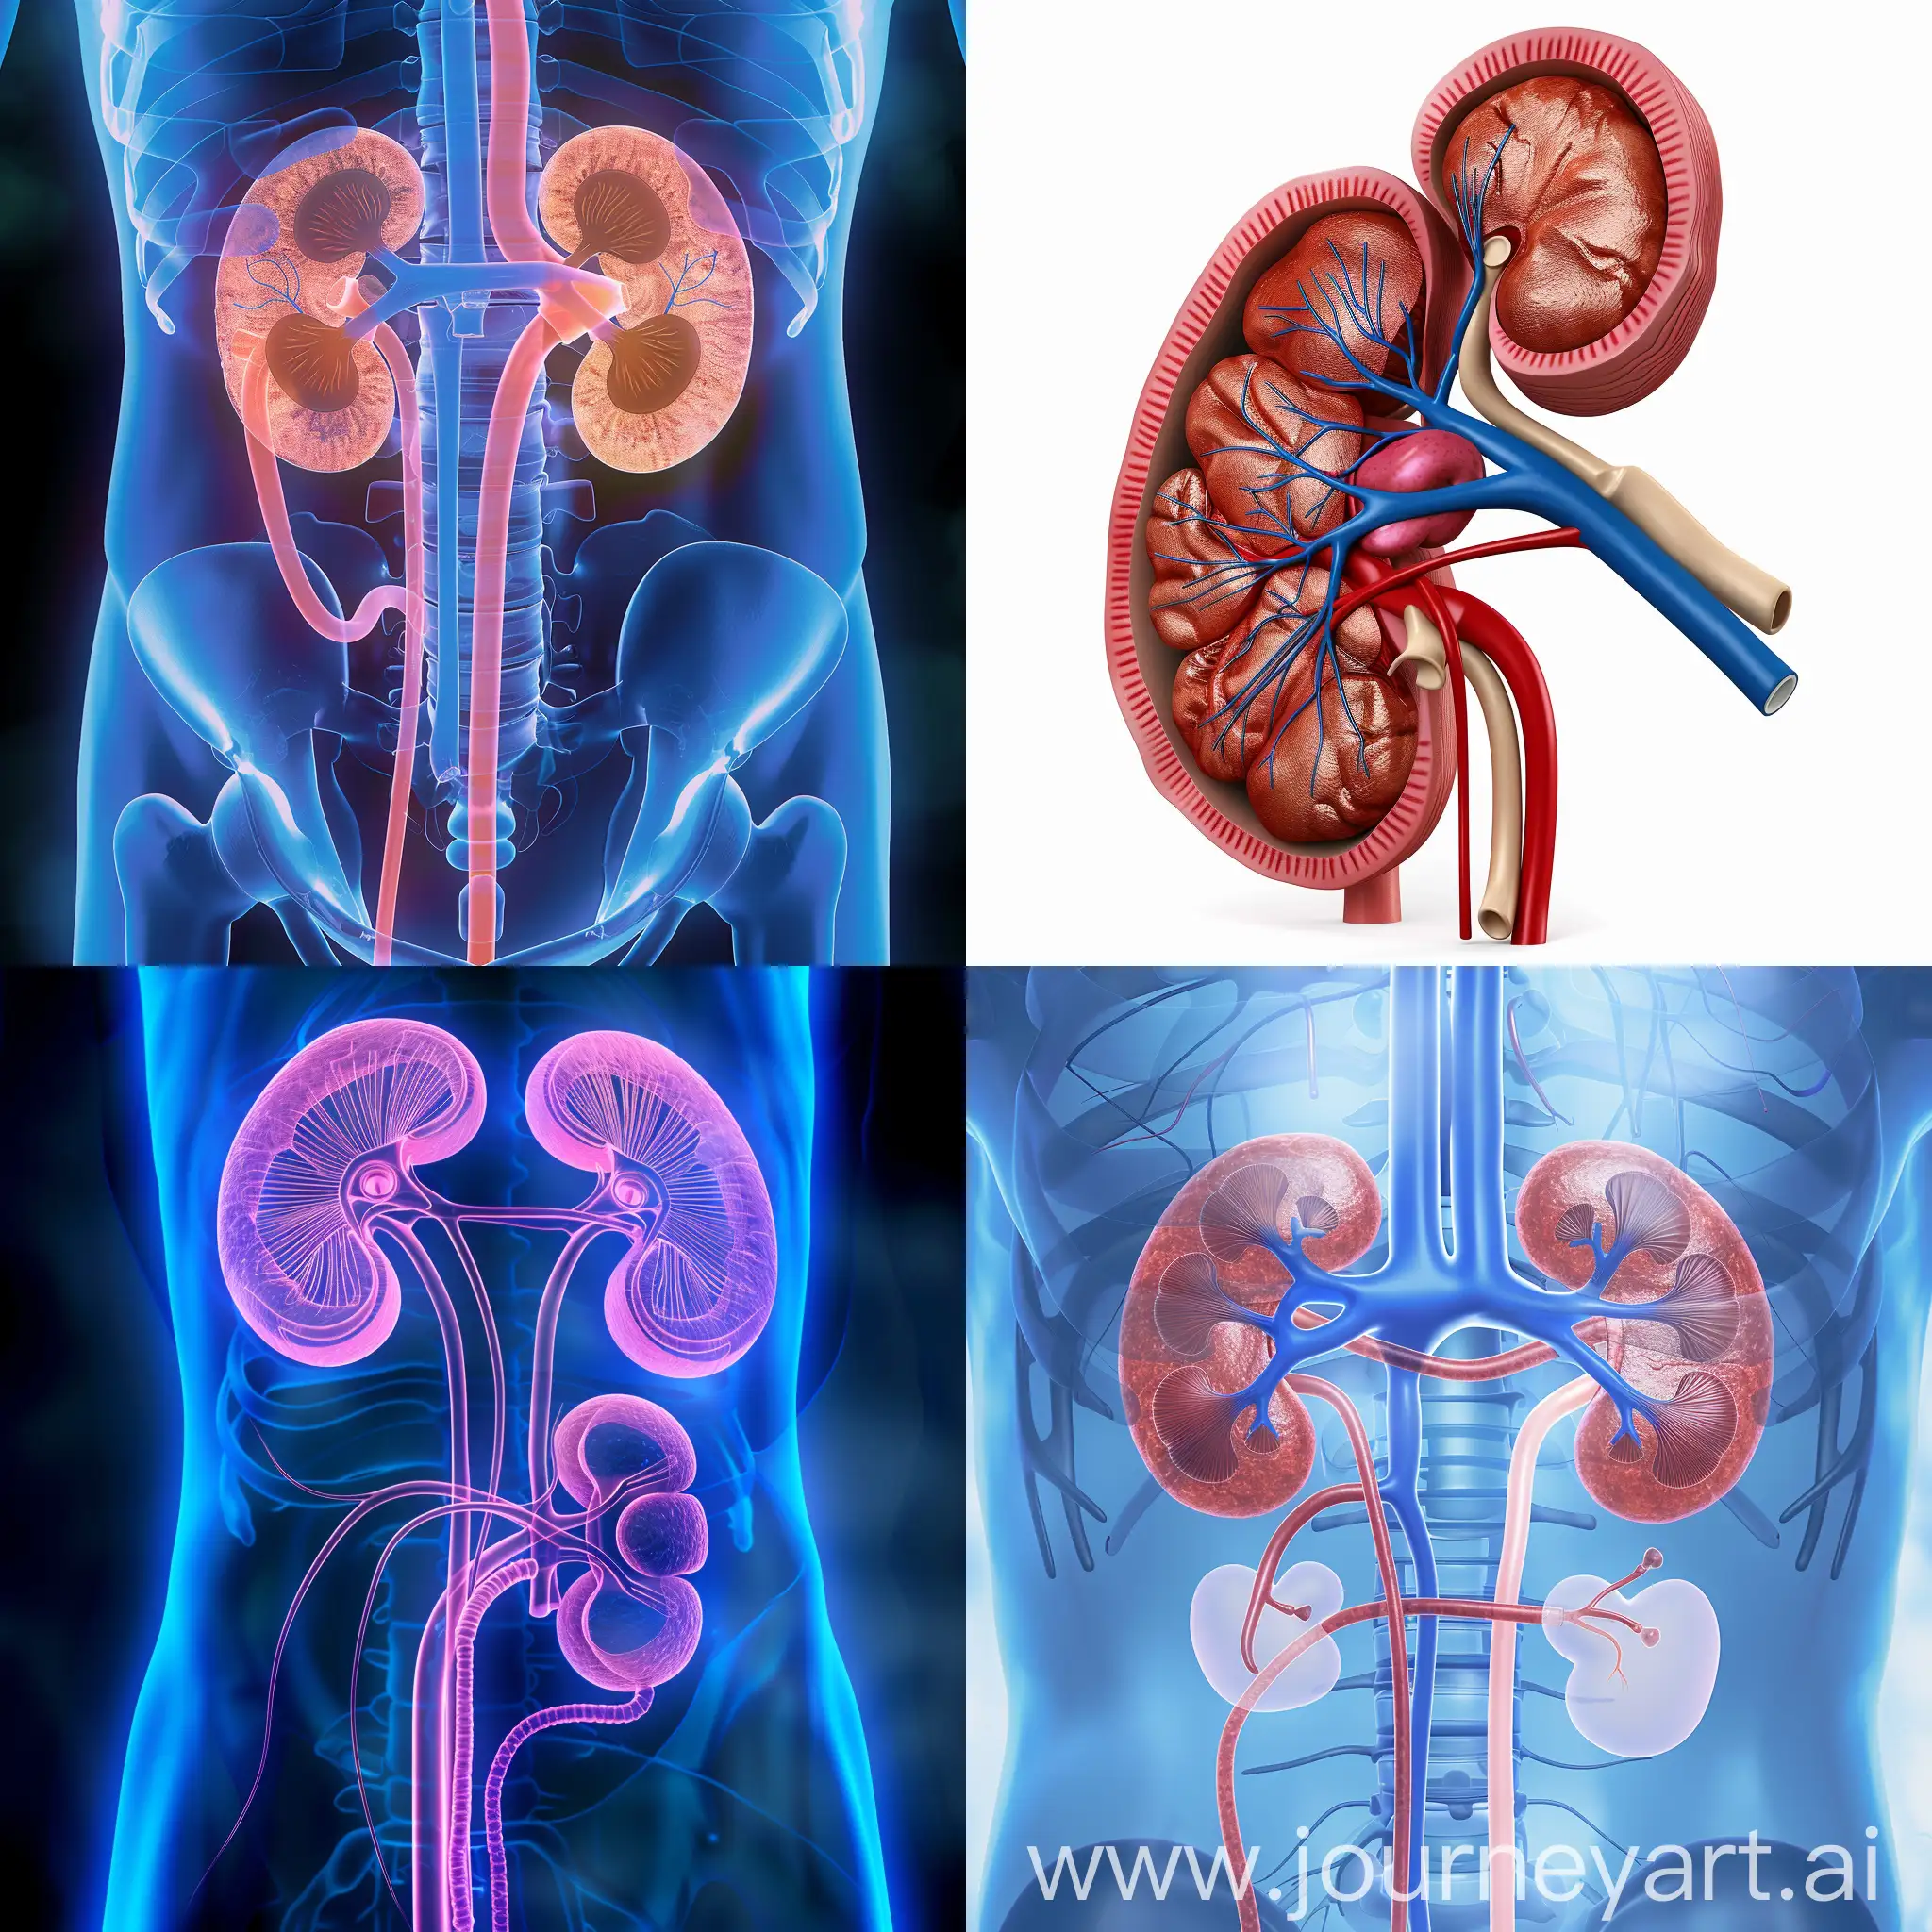 kidney transplant image for blog